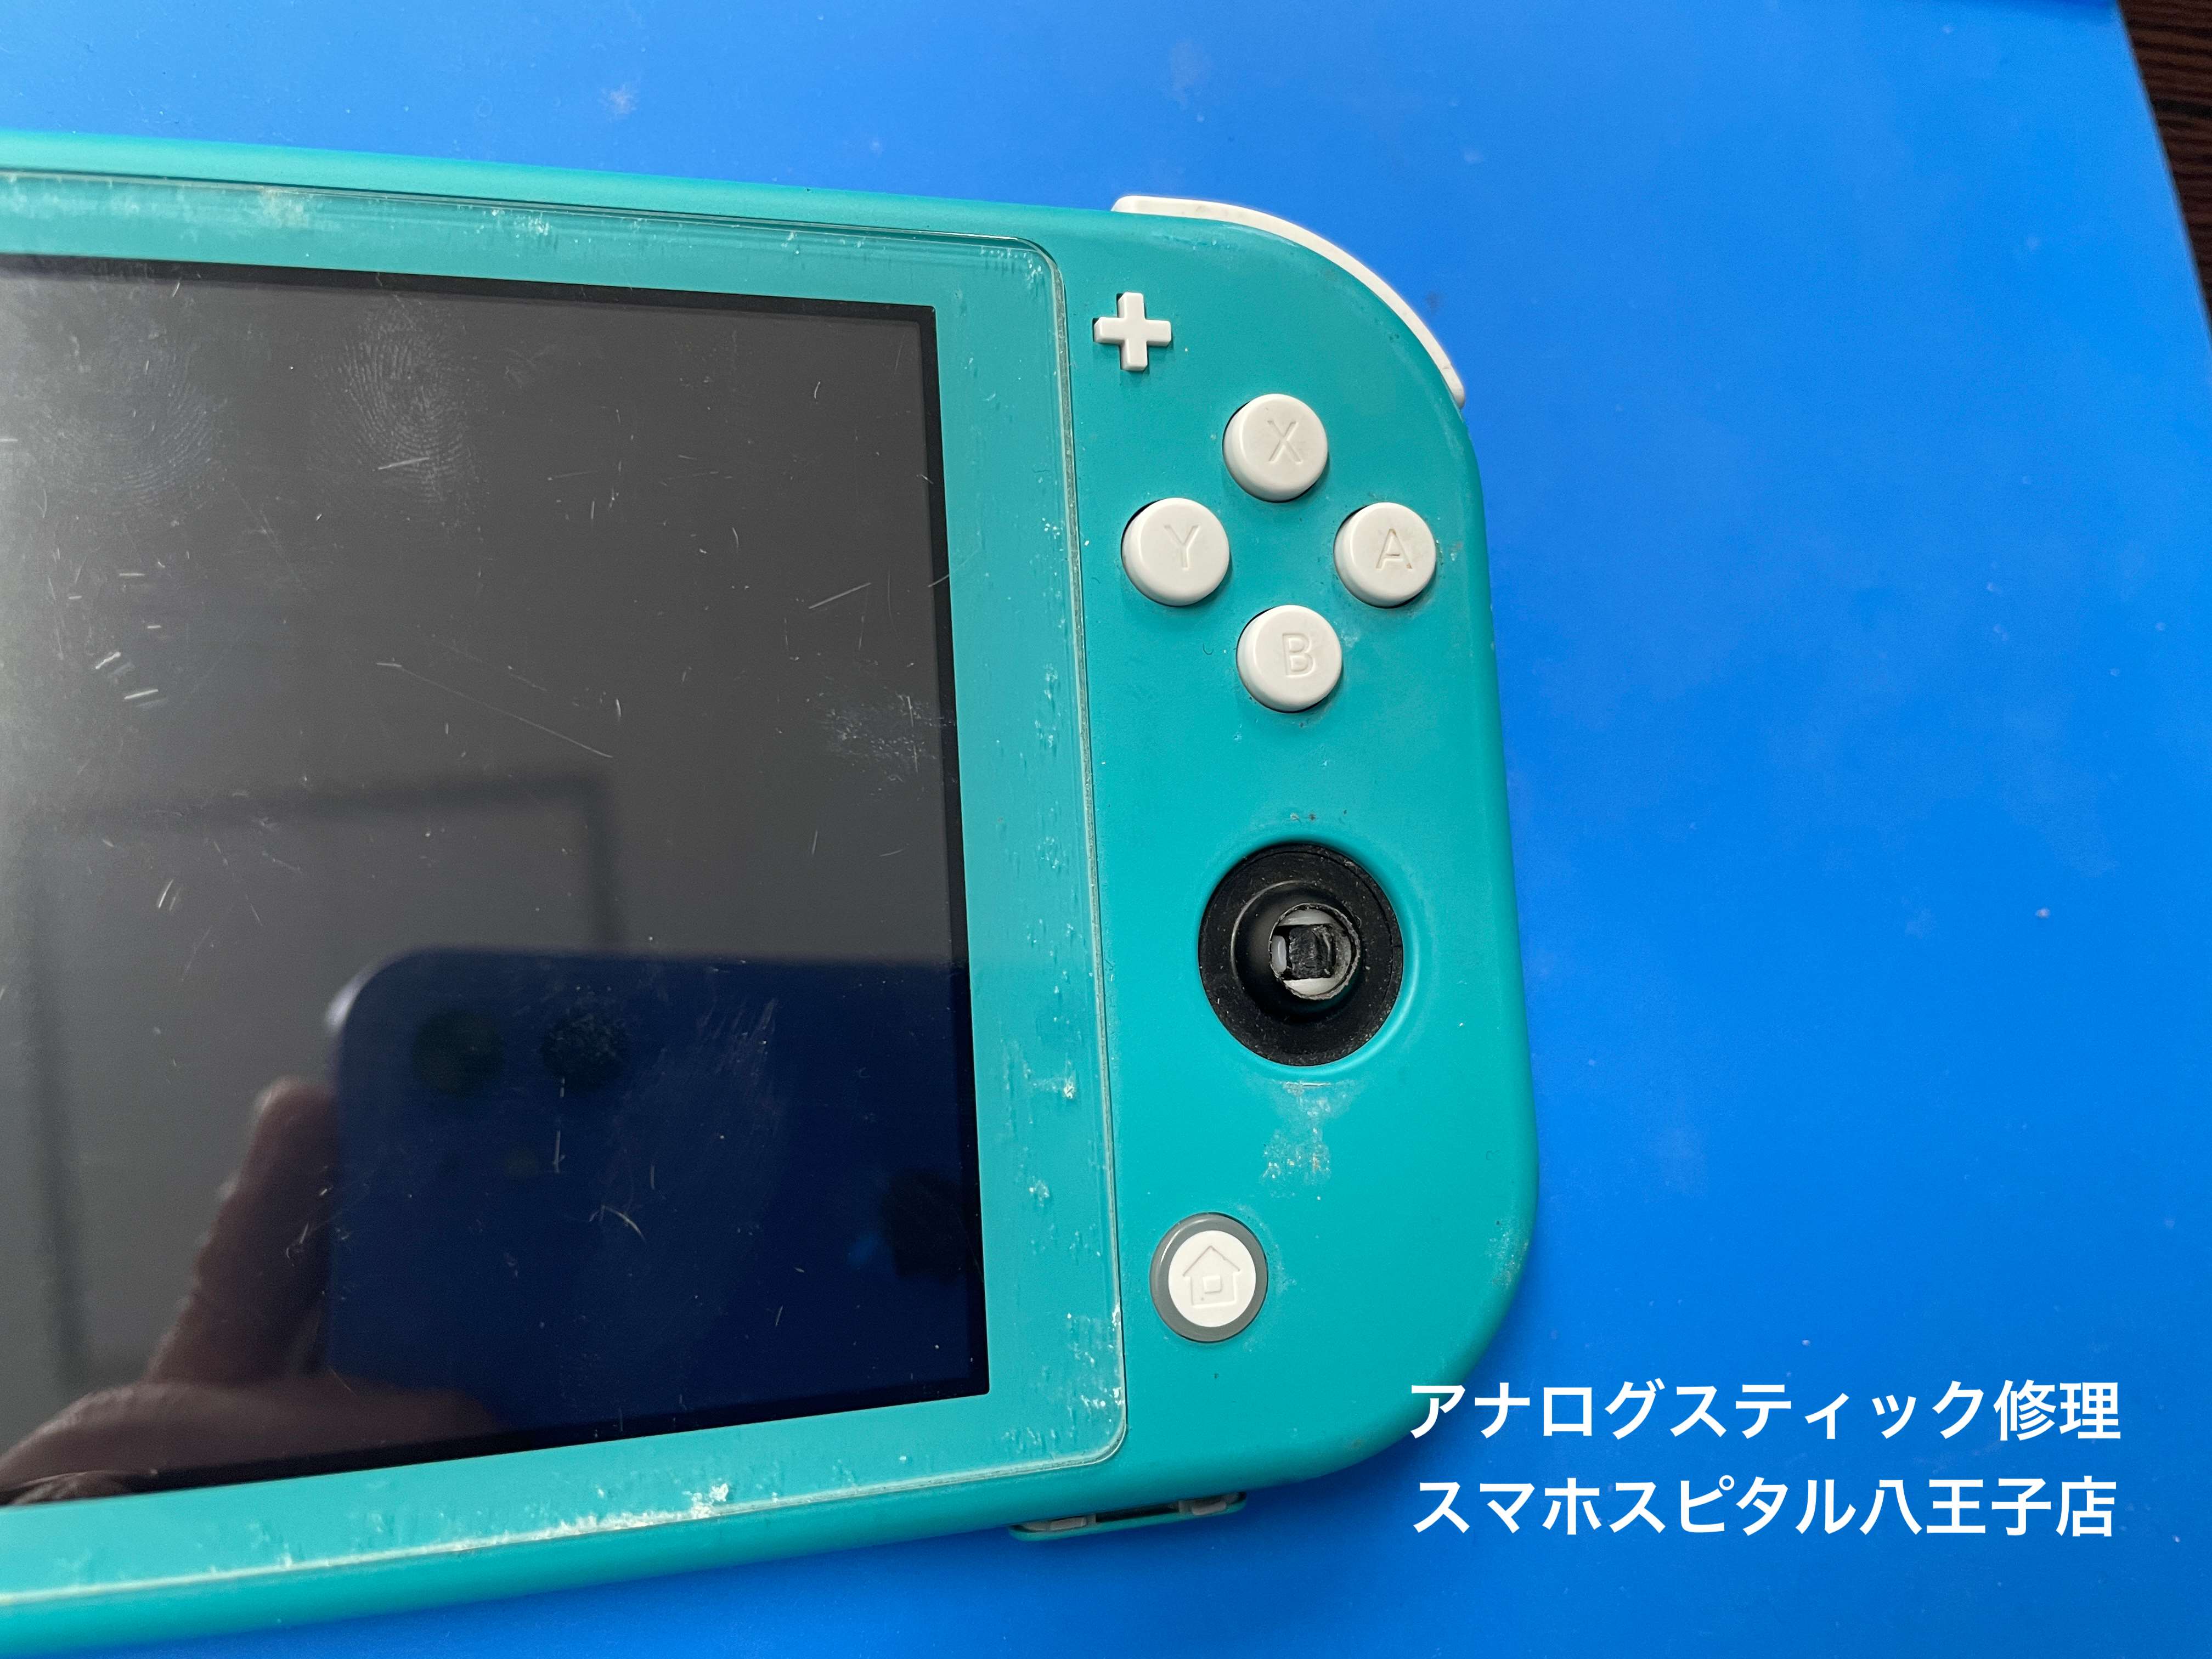 1個 Nintendo switchLite 新品です✨